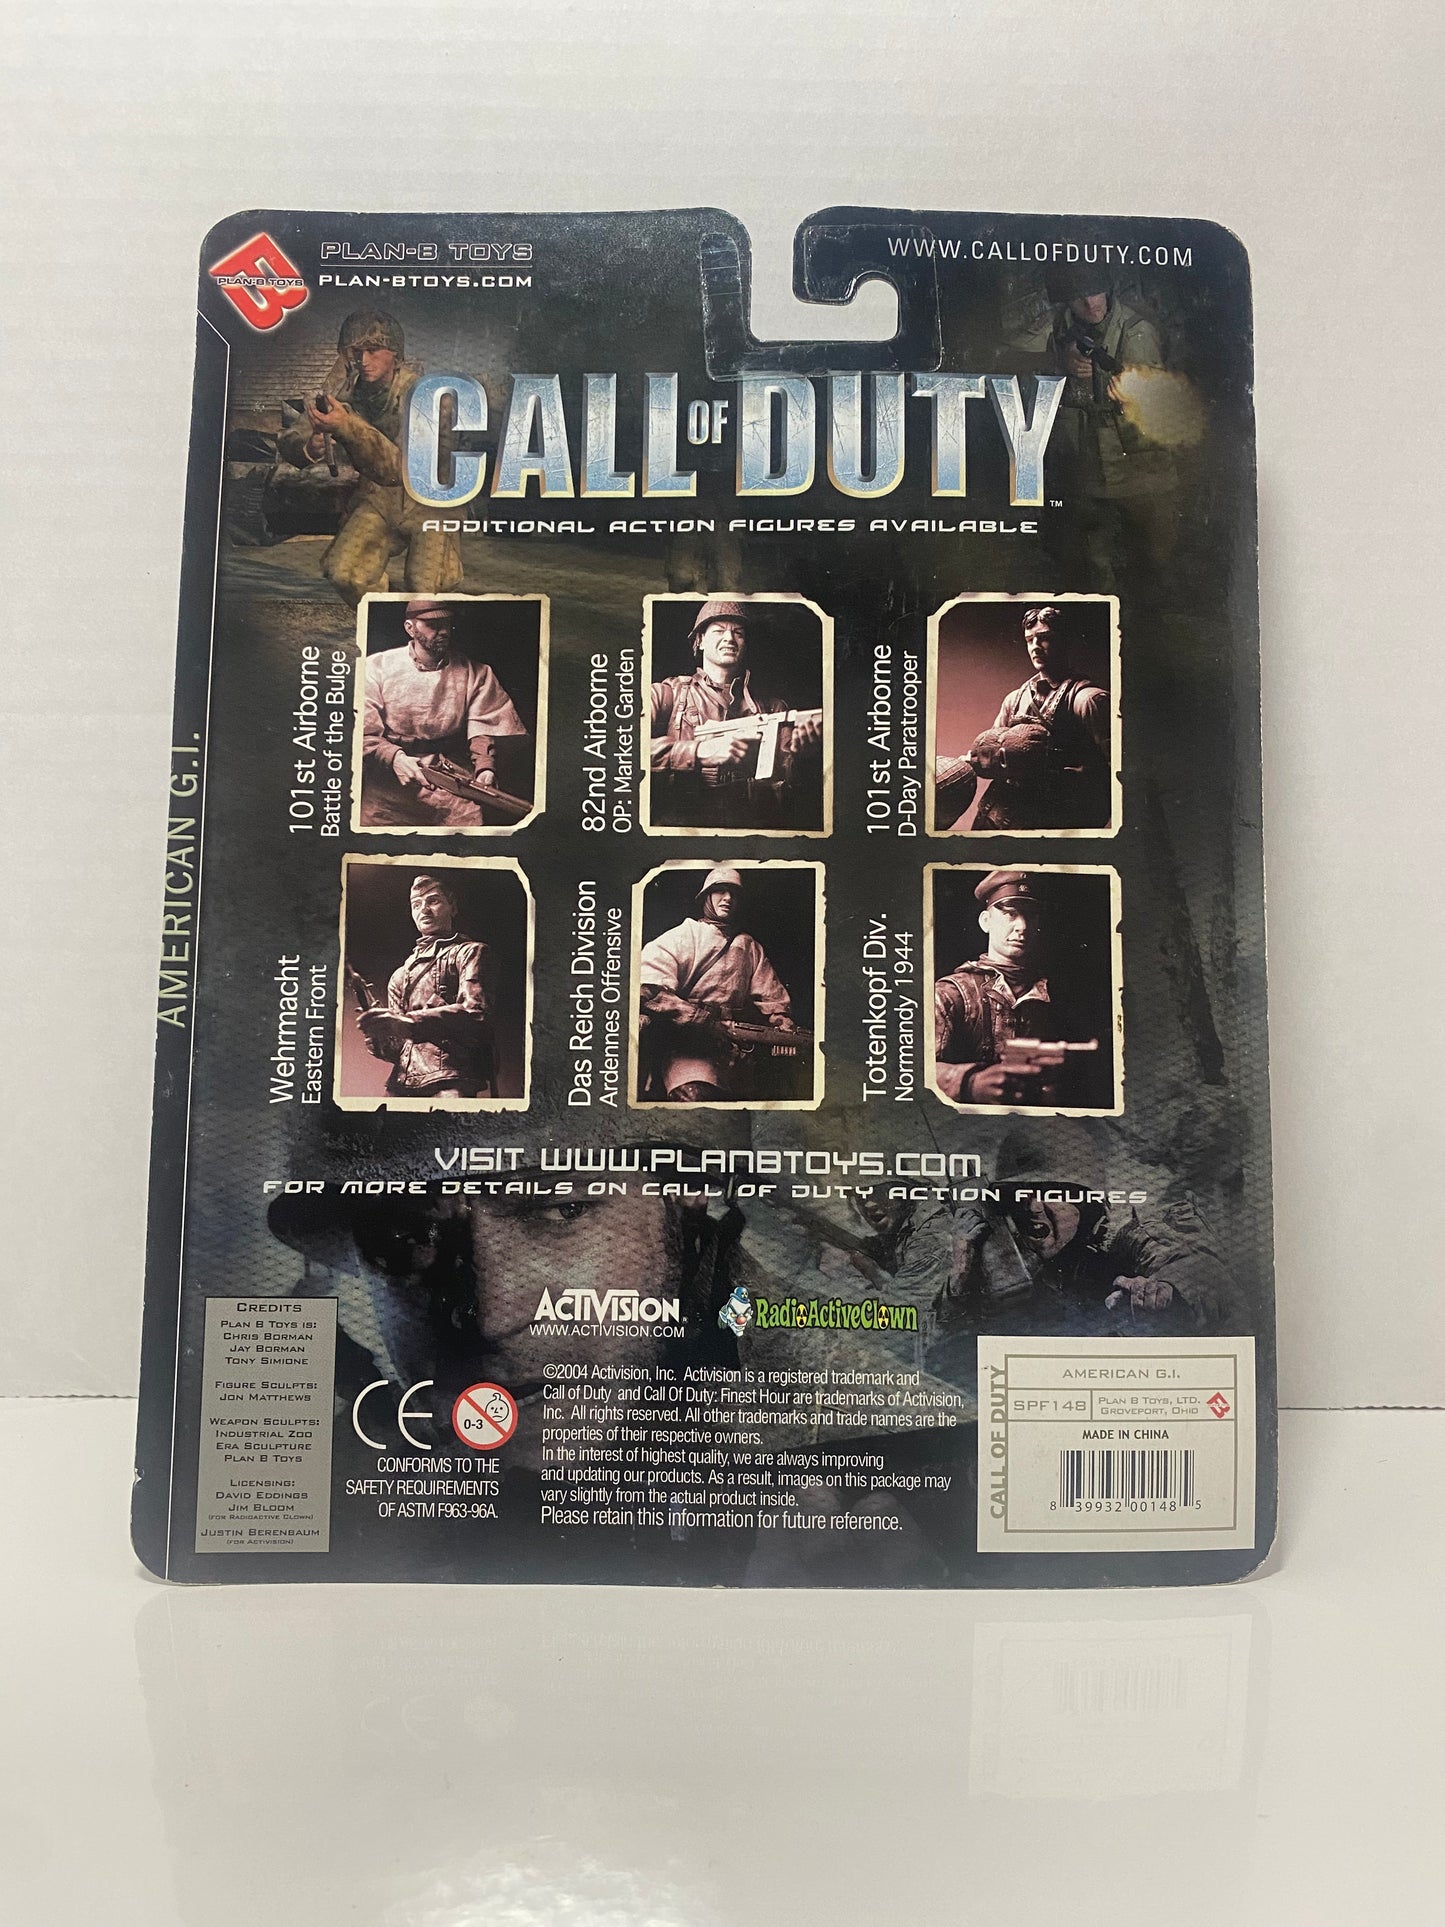 Call of Duty American G.I.